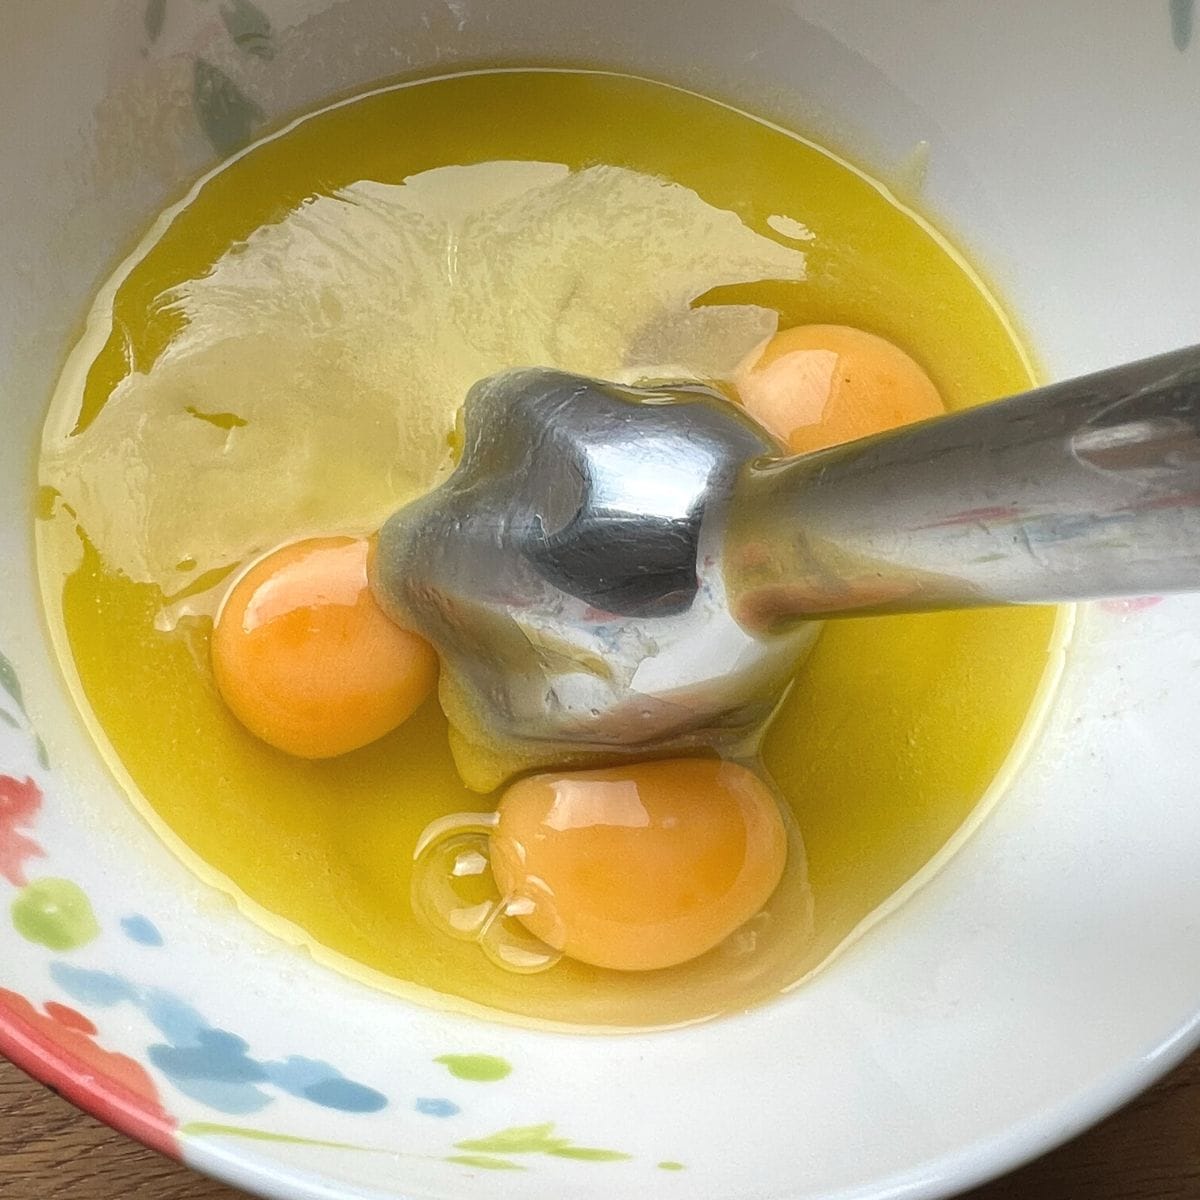 Blending eggs with hand blender.